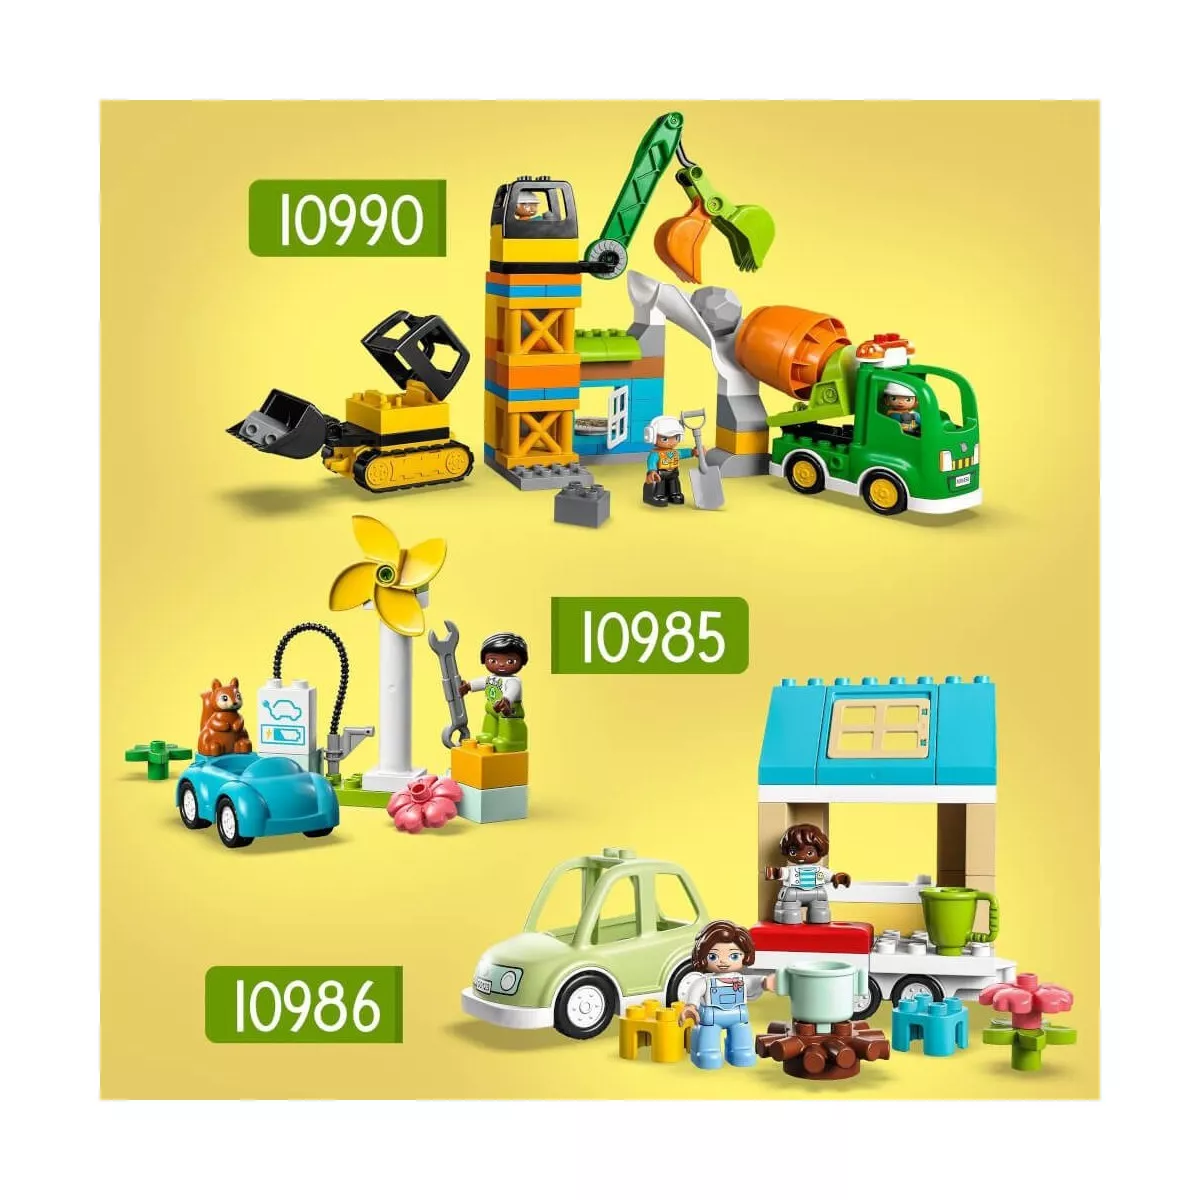 LEGO 10990 Baustelle Mit Baufahrzeugen